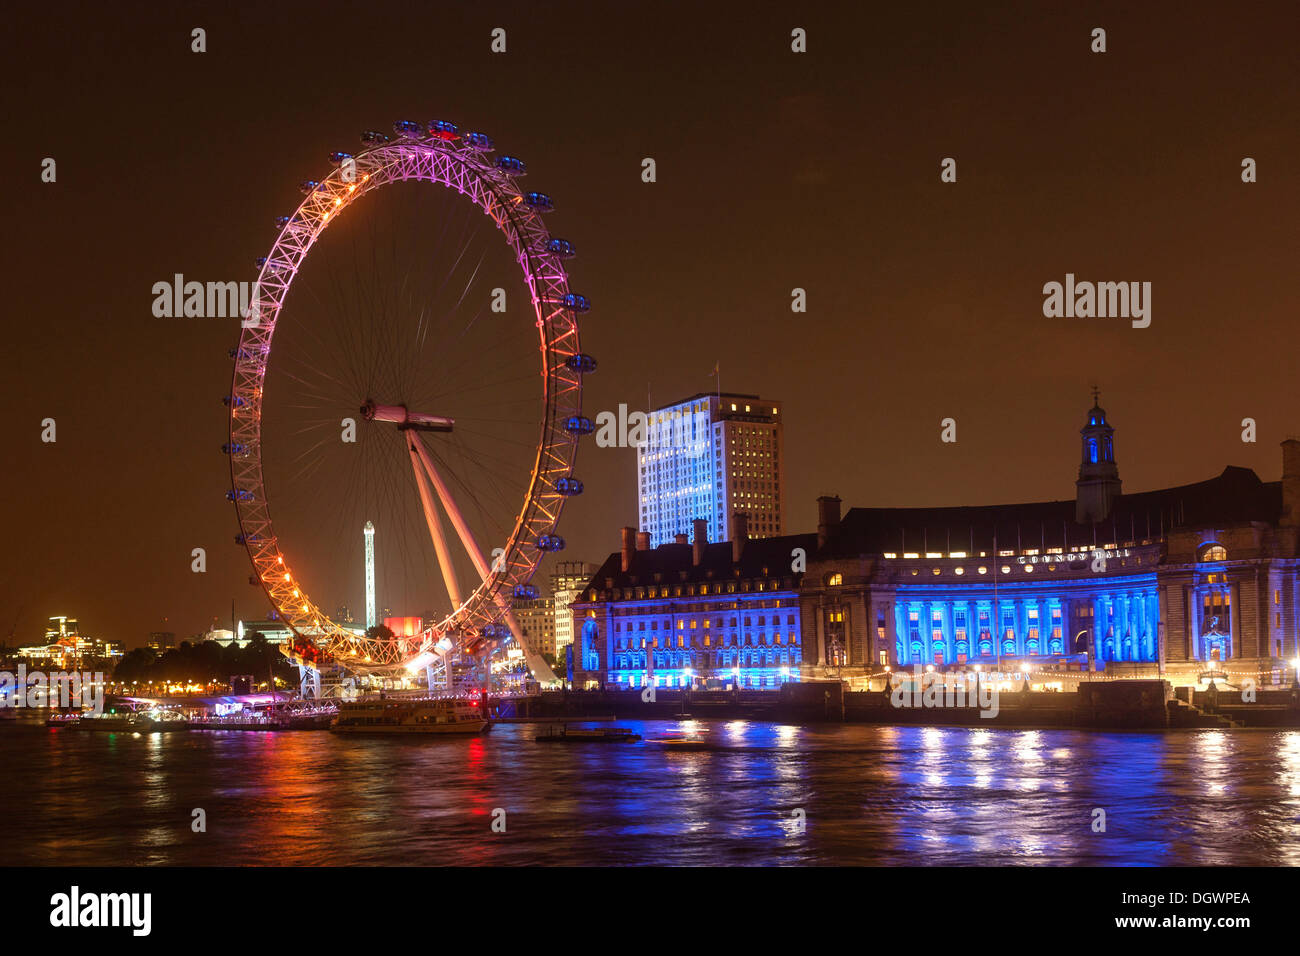 Photo de nuit, le London Eye en voyant orange, le County Hall en lumière bleue, Tamise, Londres, Angleterre, Royaume-Uni, Europe Banque D'Images